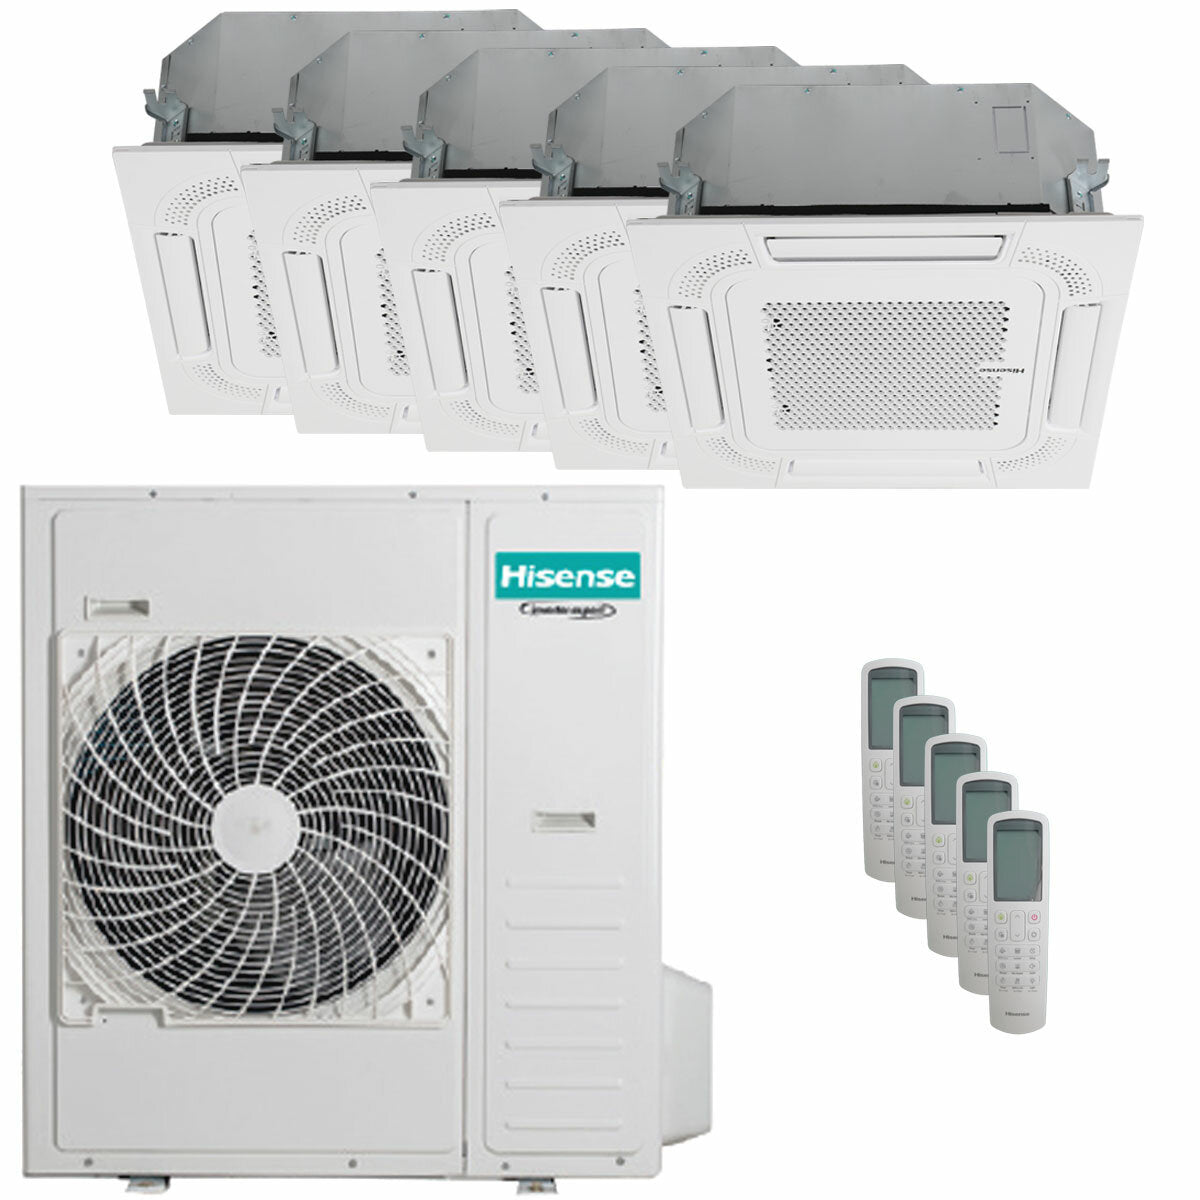 Hisense air conditioner ACT penta split 9000+9000+9000+12000+12000 BTU inverter outdoor unit 12.5 kW